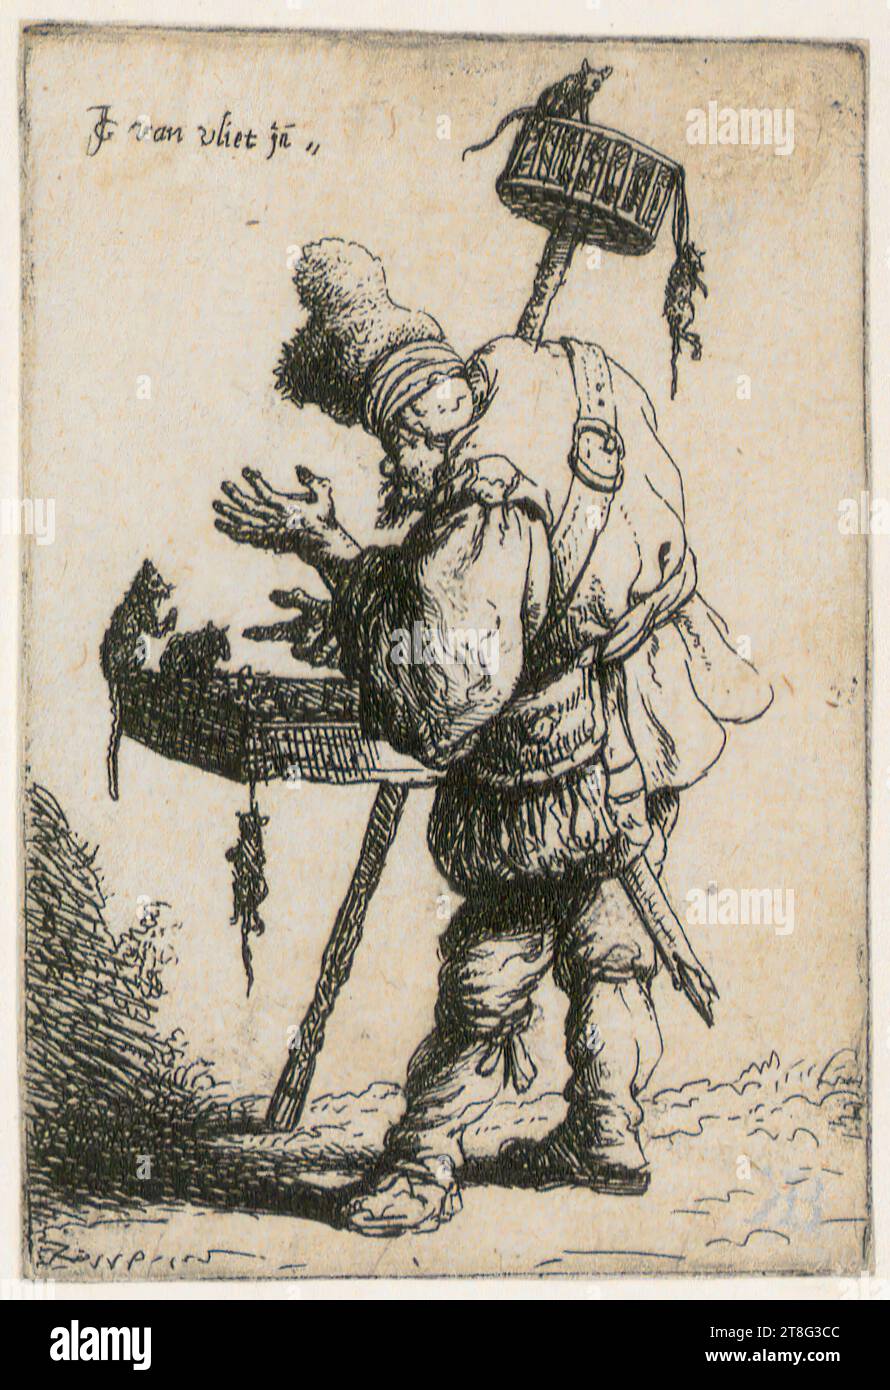 Johannes van Vliet (1628 - 1637 mentionné autour), pied Piper, feuille 8 de la série 'Beggar', origine du support d'impression : 1632, gravure et gravure sur cuivre, taille de la feuille : 9,5 x 6,4 cm, en haut à gauche signée 'JG van vliet jn Banque D'Images